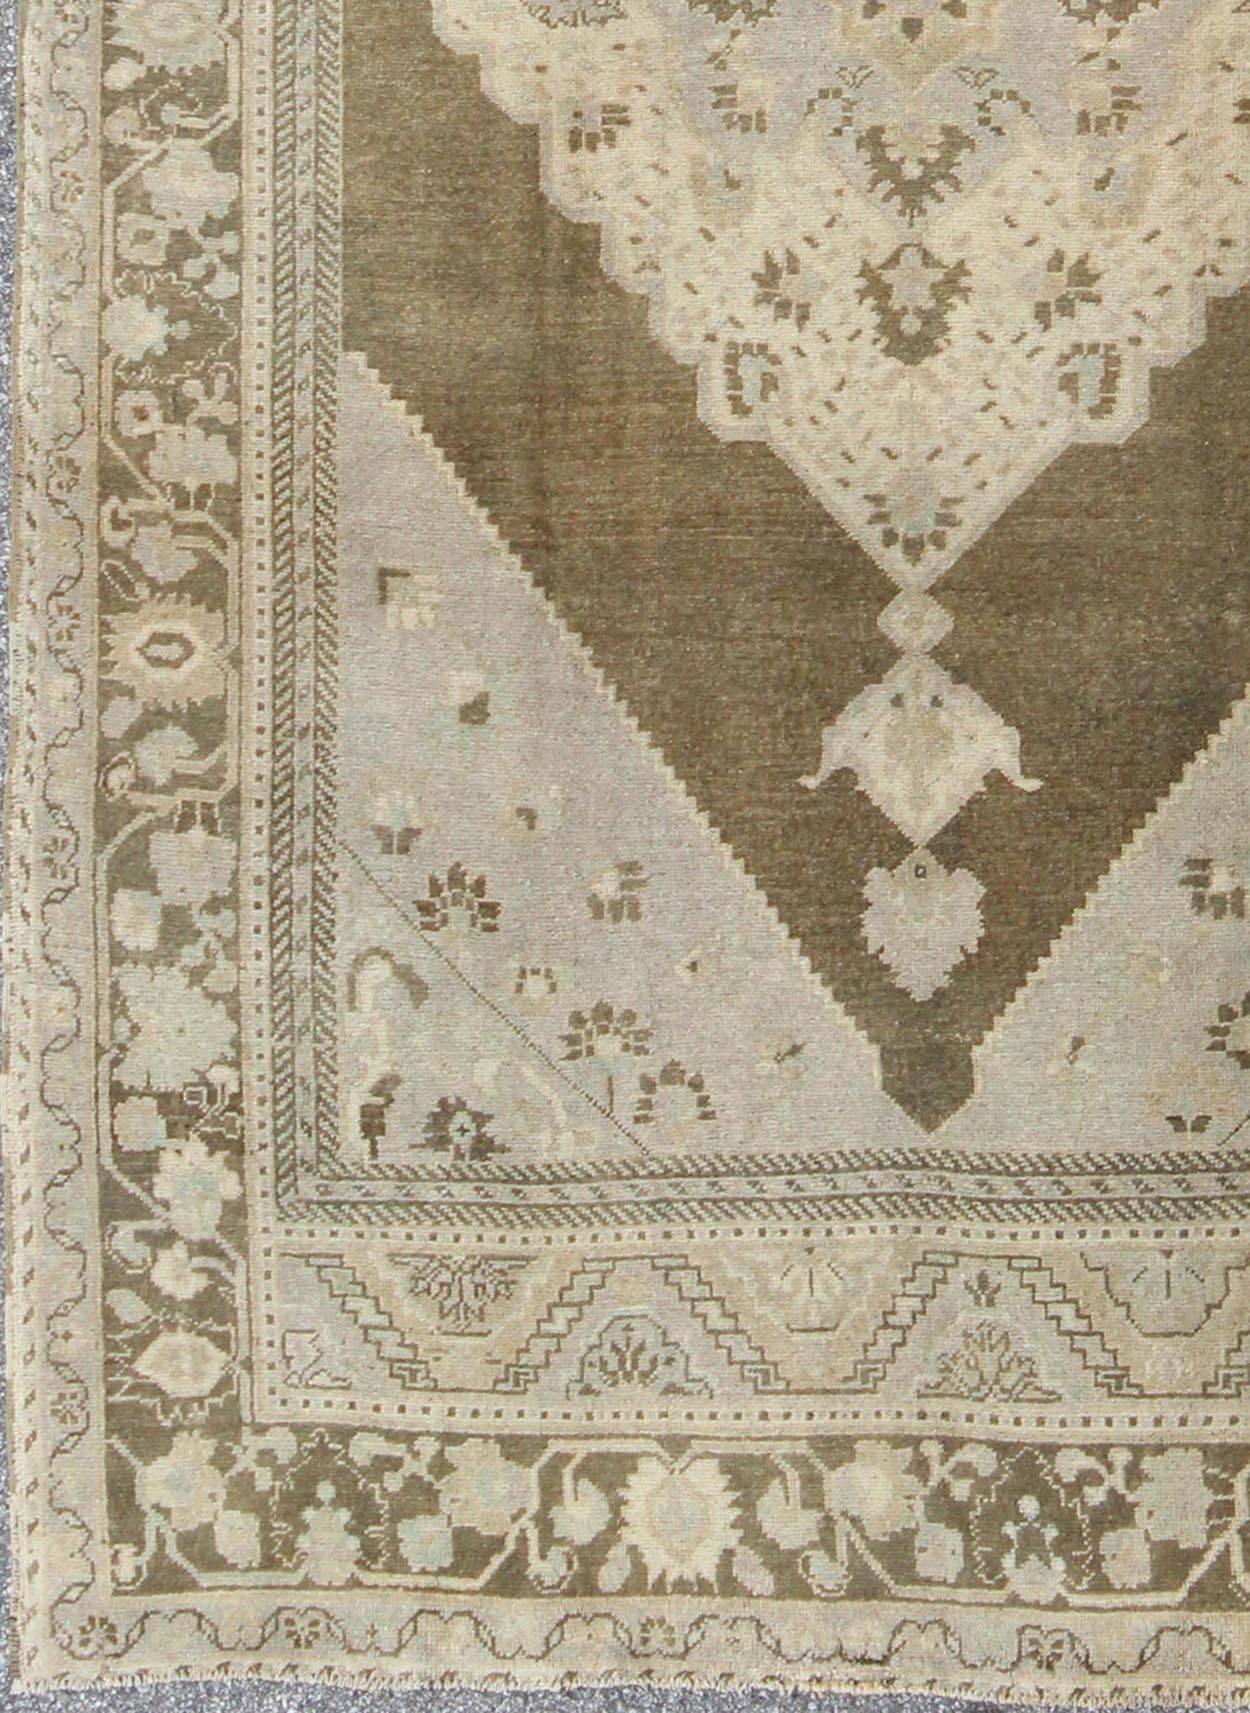 Dieser auffällige türkische Oushak-Teppich im Vintage-Stil hat einen braunen Grundton, der durch ein schillerndes Medaillon-Muster in verschiedenen Farbtönen hervorgehoben wird. Ein großformatiges Medaillon erstreckt sich über das mittlere Feld. Die